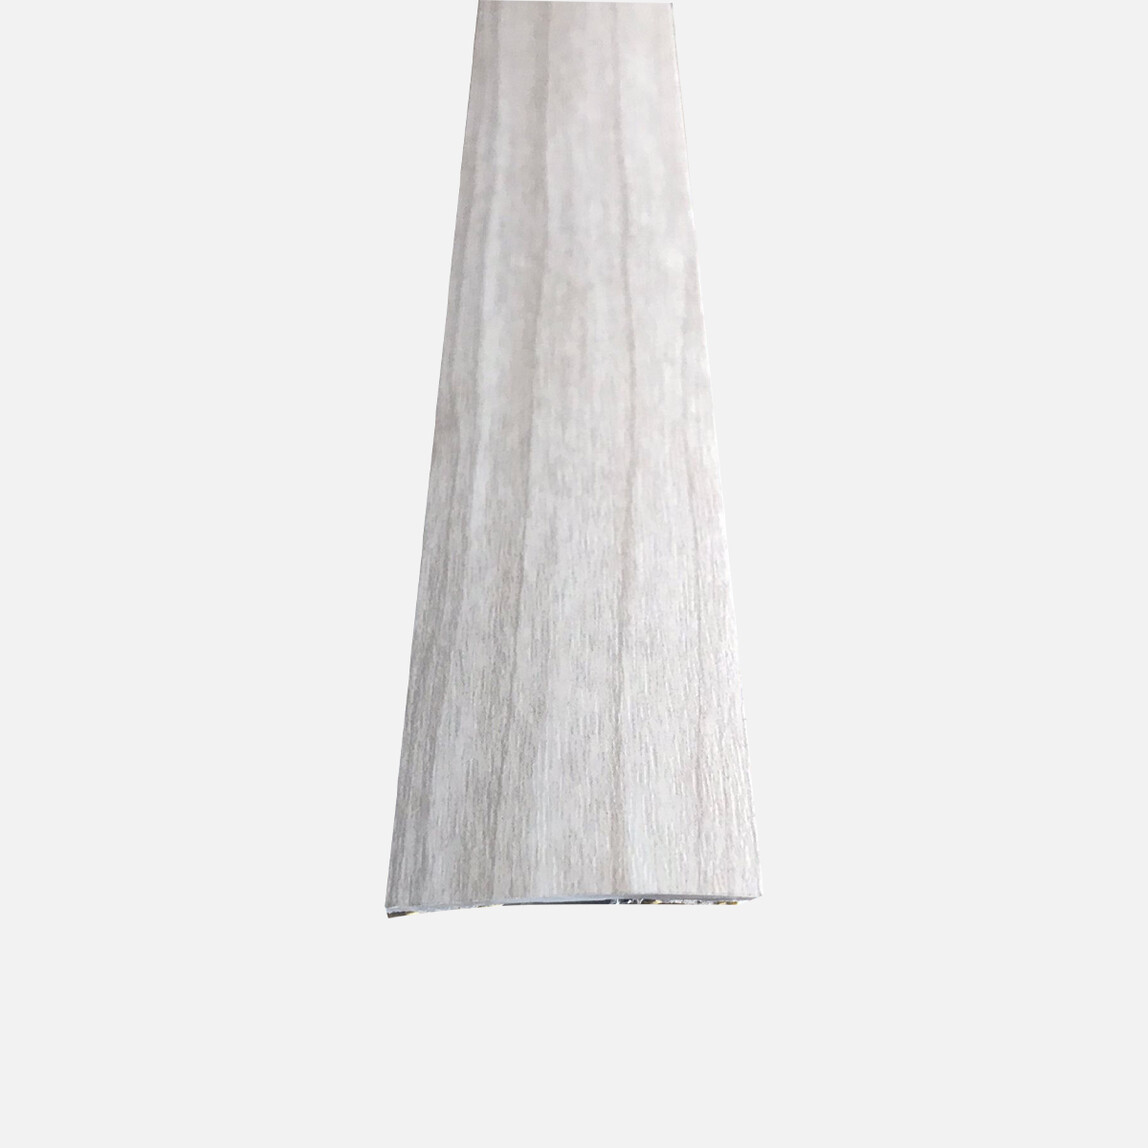    Ersin 40 mm Ek Kapama Profili Pine 270 cm 